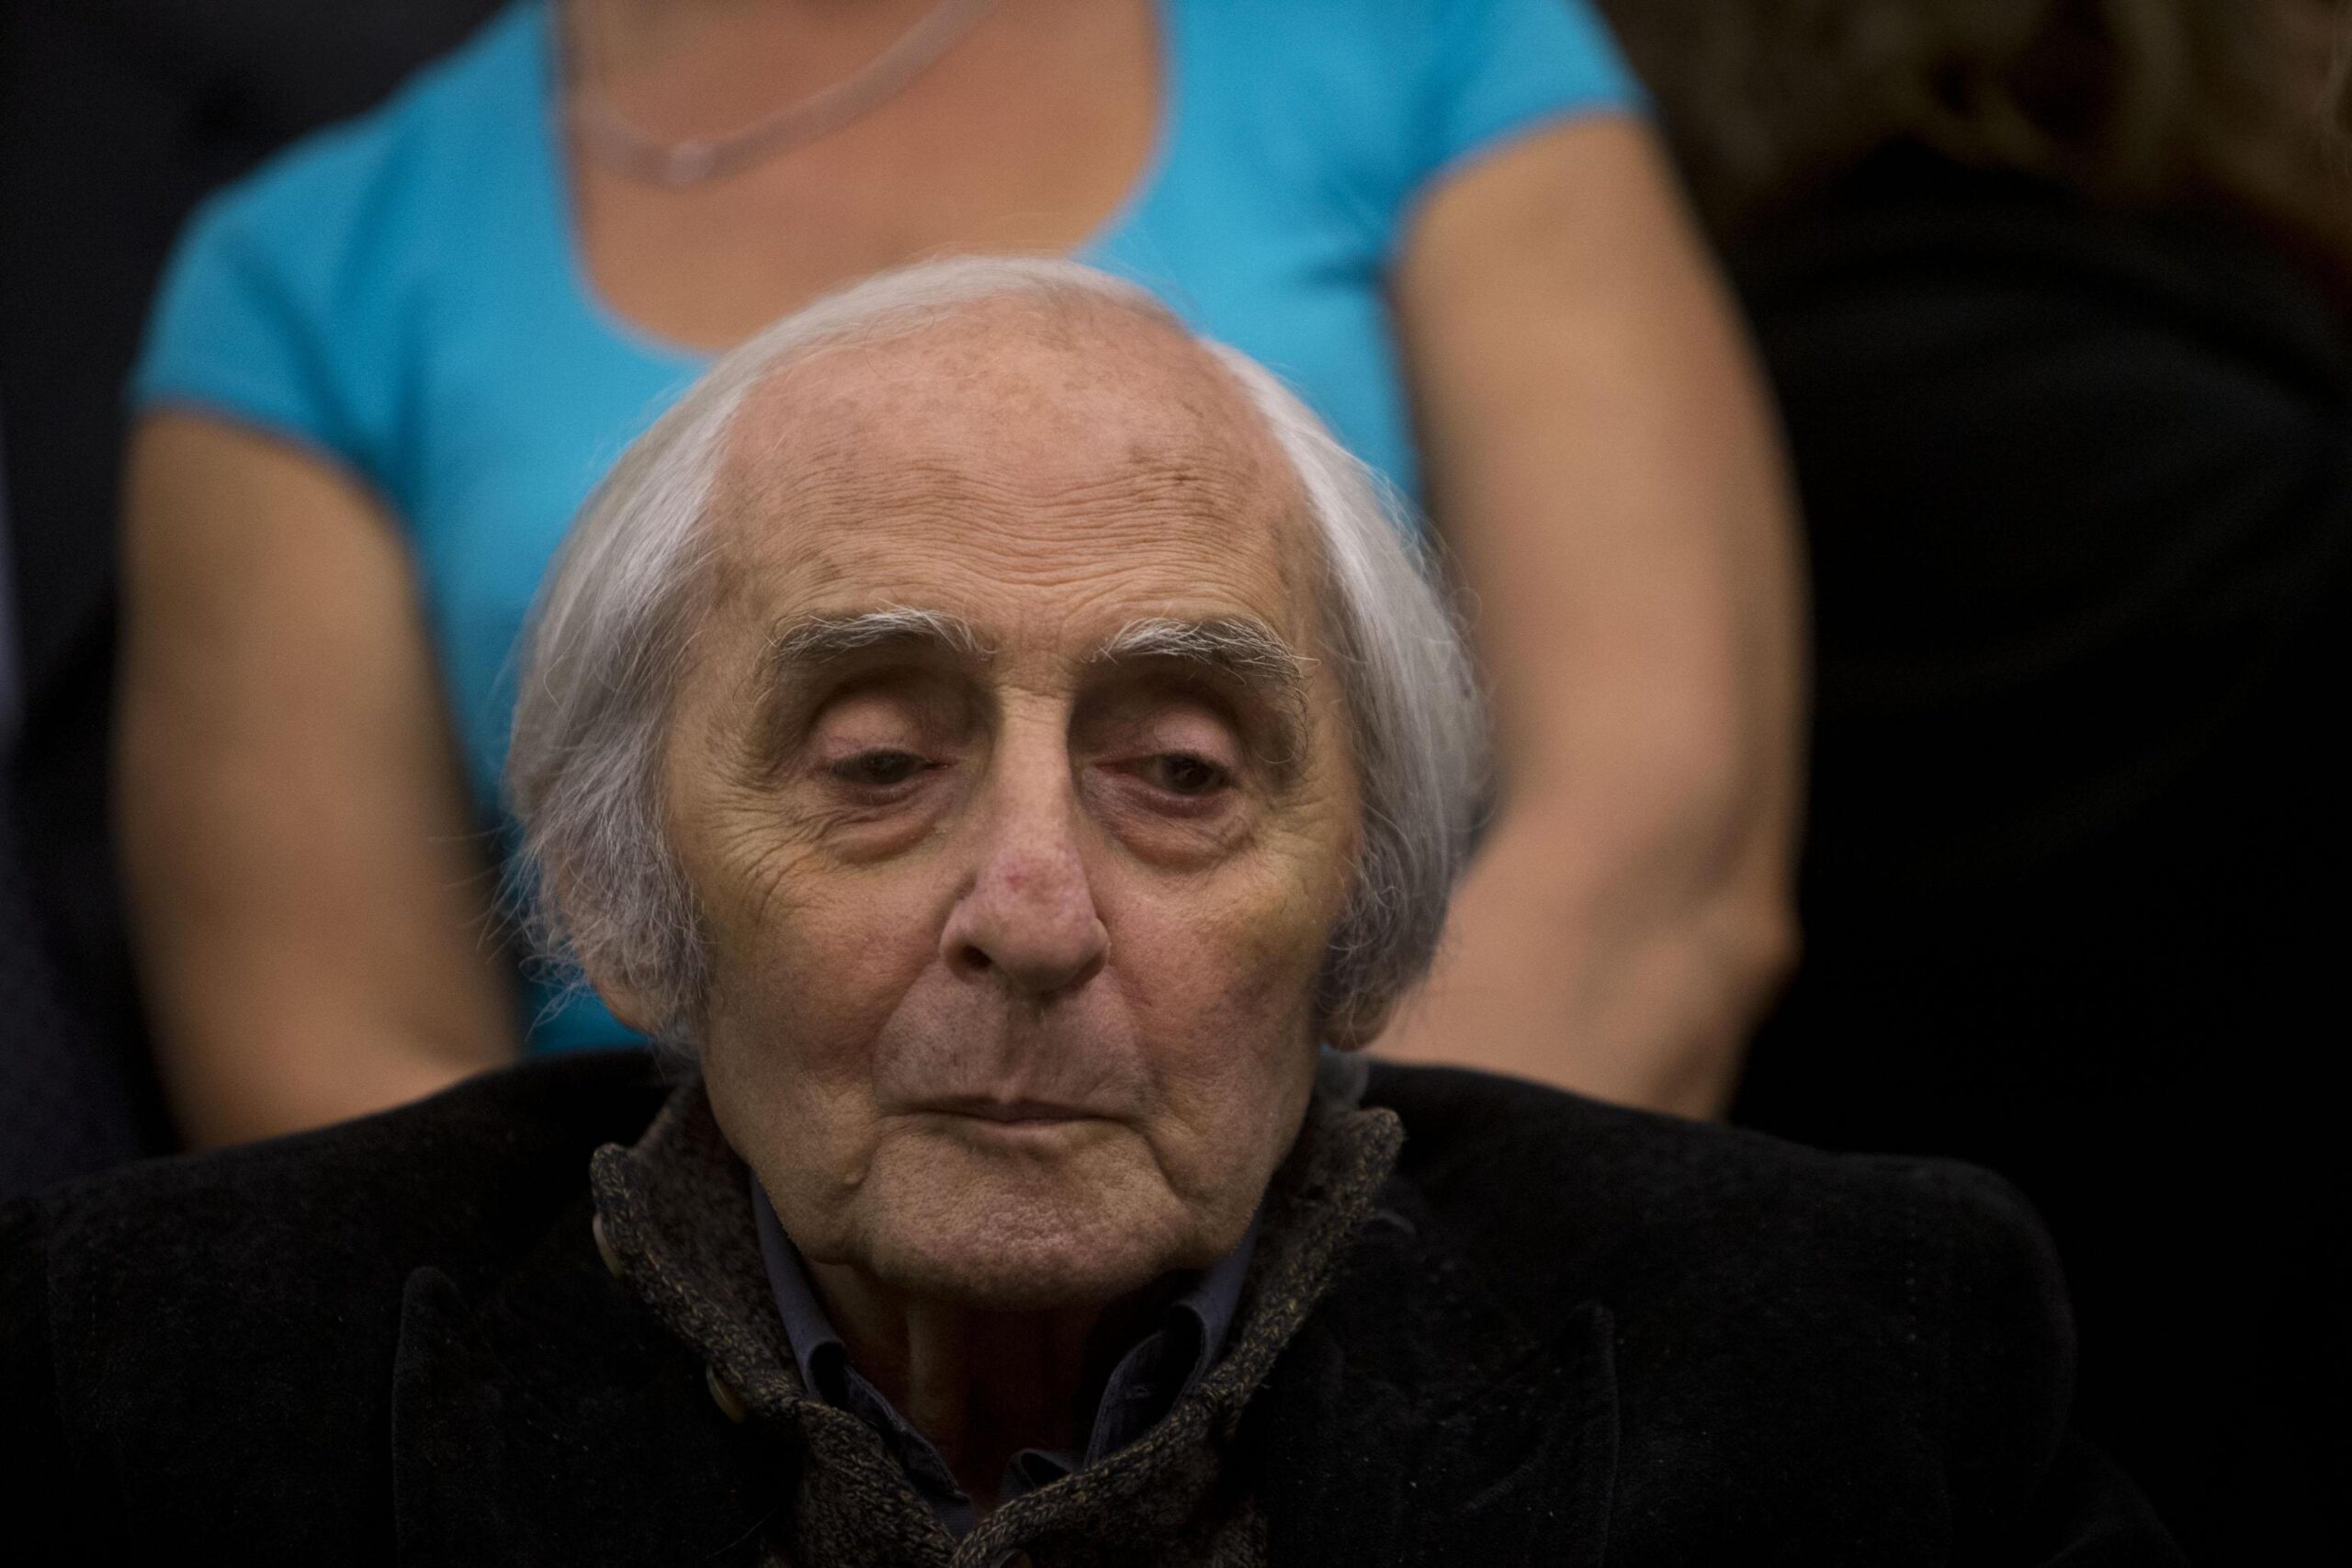 Addio a Citto Maselli, è morto il grande regista e militante della sinistra italiana